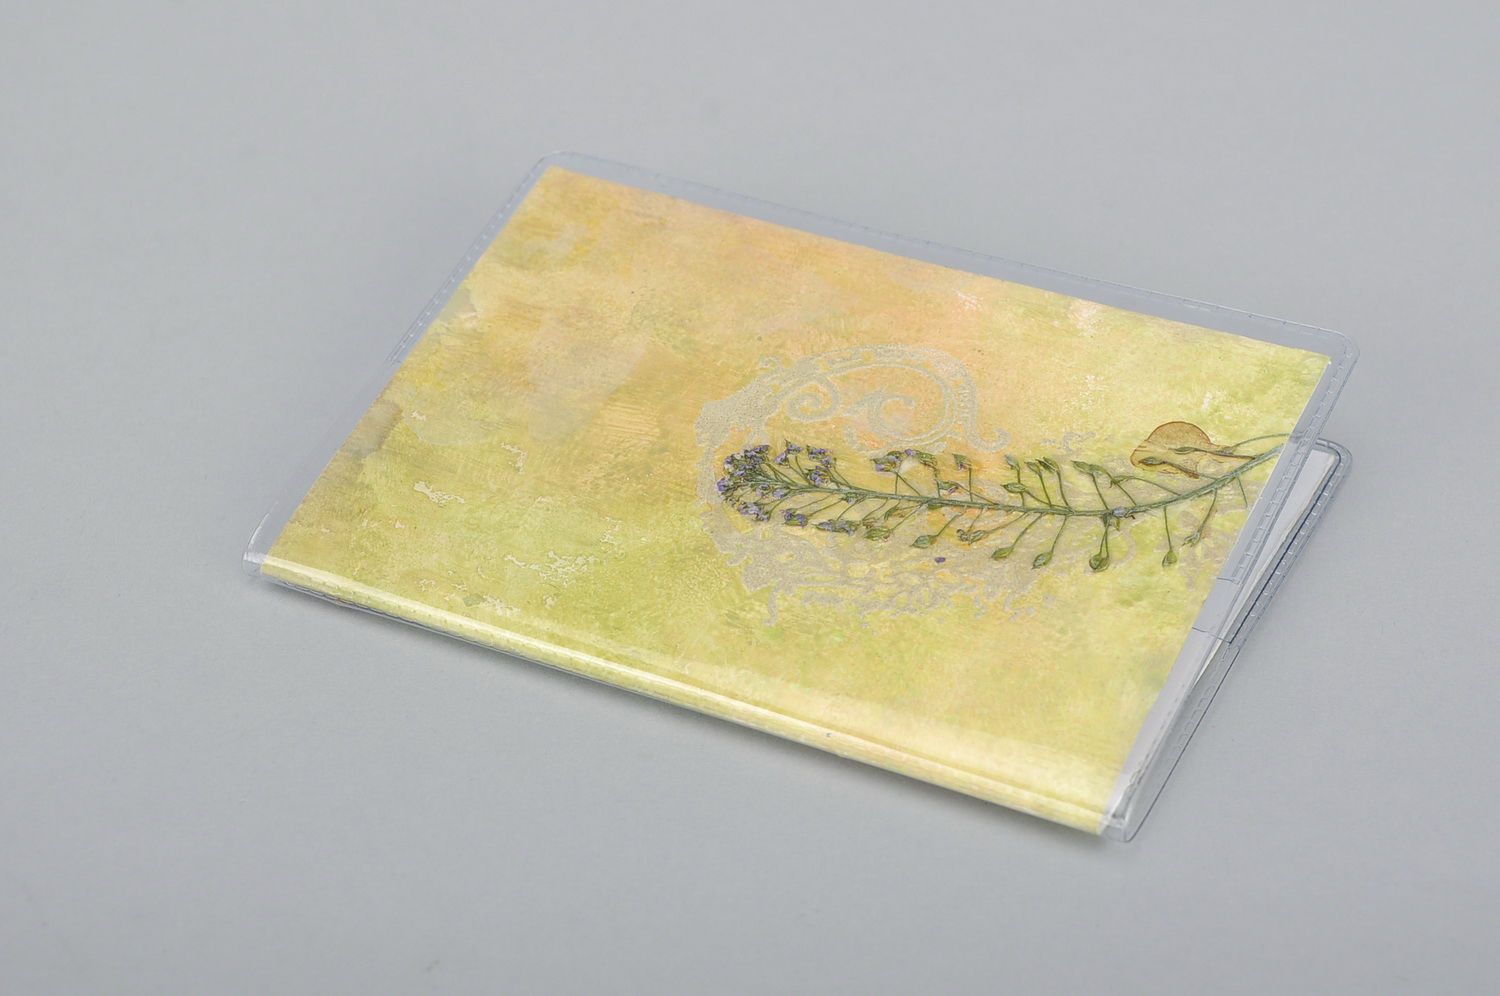 Couverture de passeport avec fleurs séchées 'Papillons' photo 2